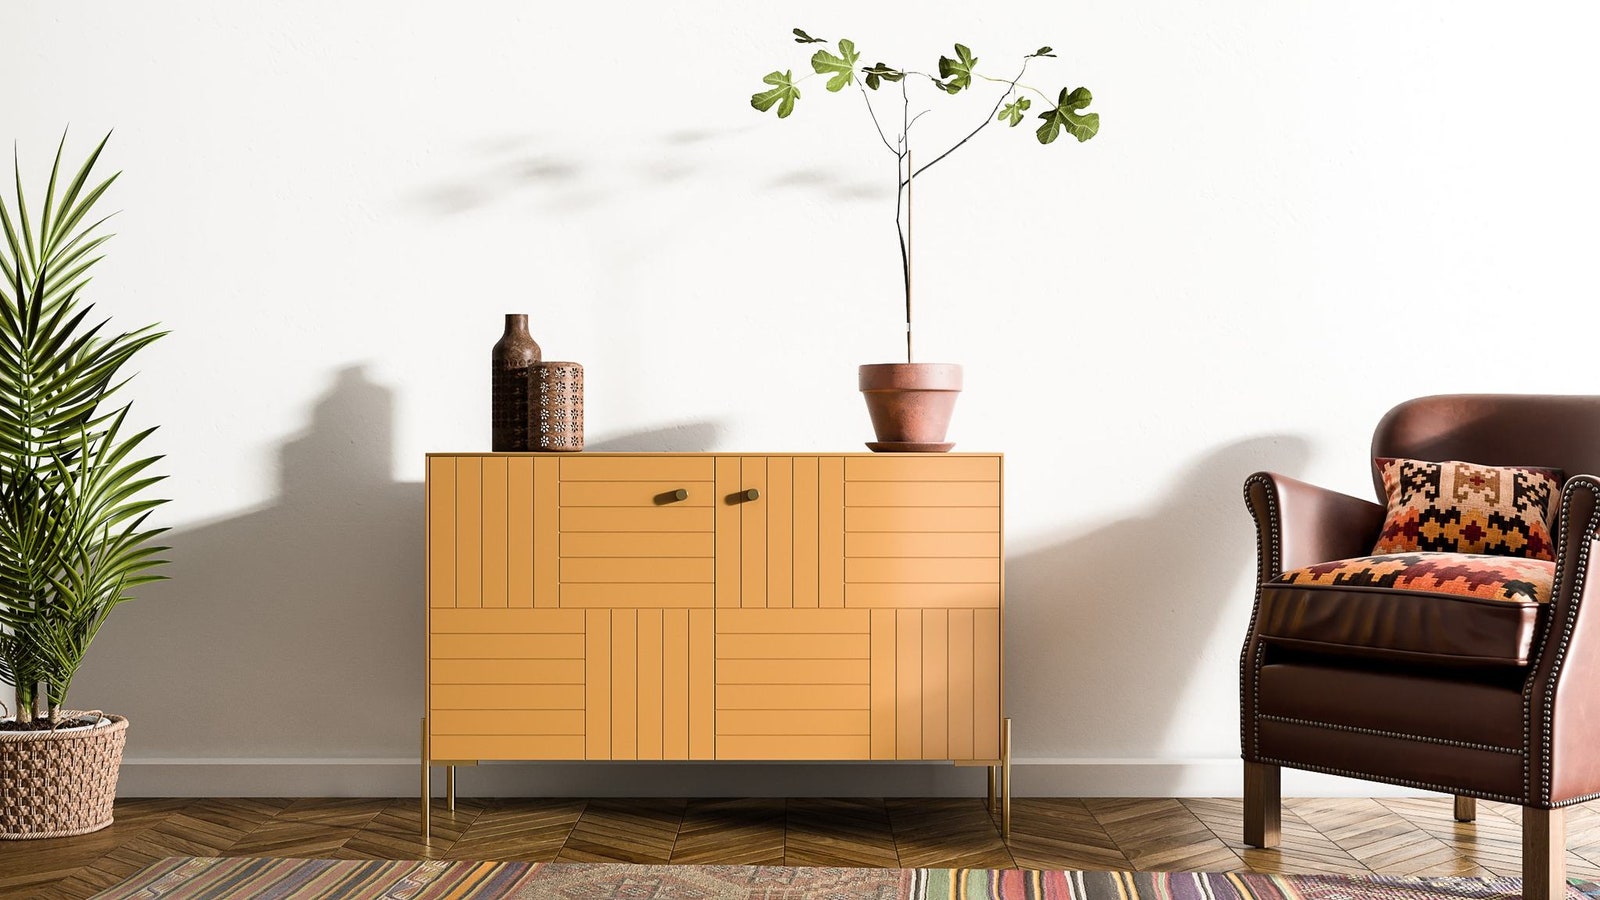 Как преобразить мебель из IKEA 8 компаний которые помогут вам быть оригинальными